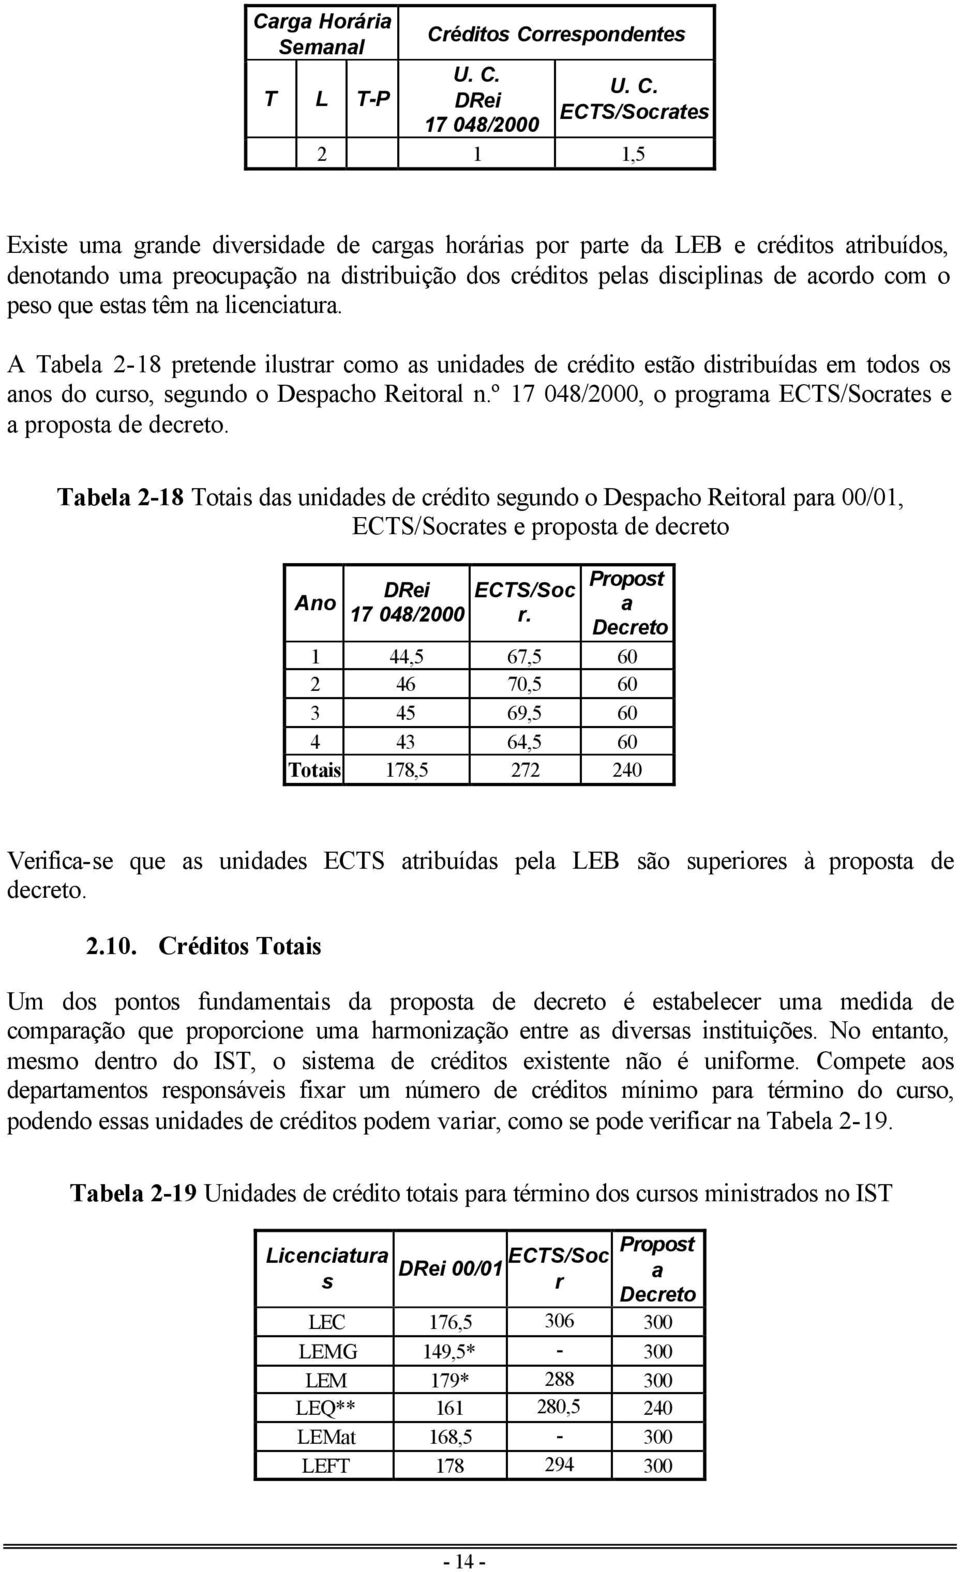 A Tabela 2-18 pretende ilustrar como as unidades de crédito estão distribuídas em todos os anos do curso, segundo o Despacho Reitoral n.º 17 048/2000, o programa ECTS/Socrates e a proposta de decreto.